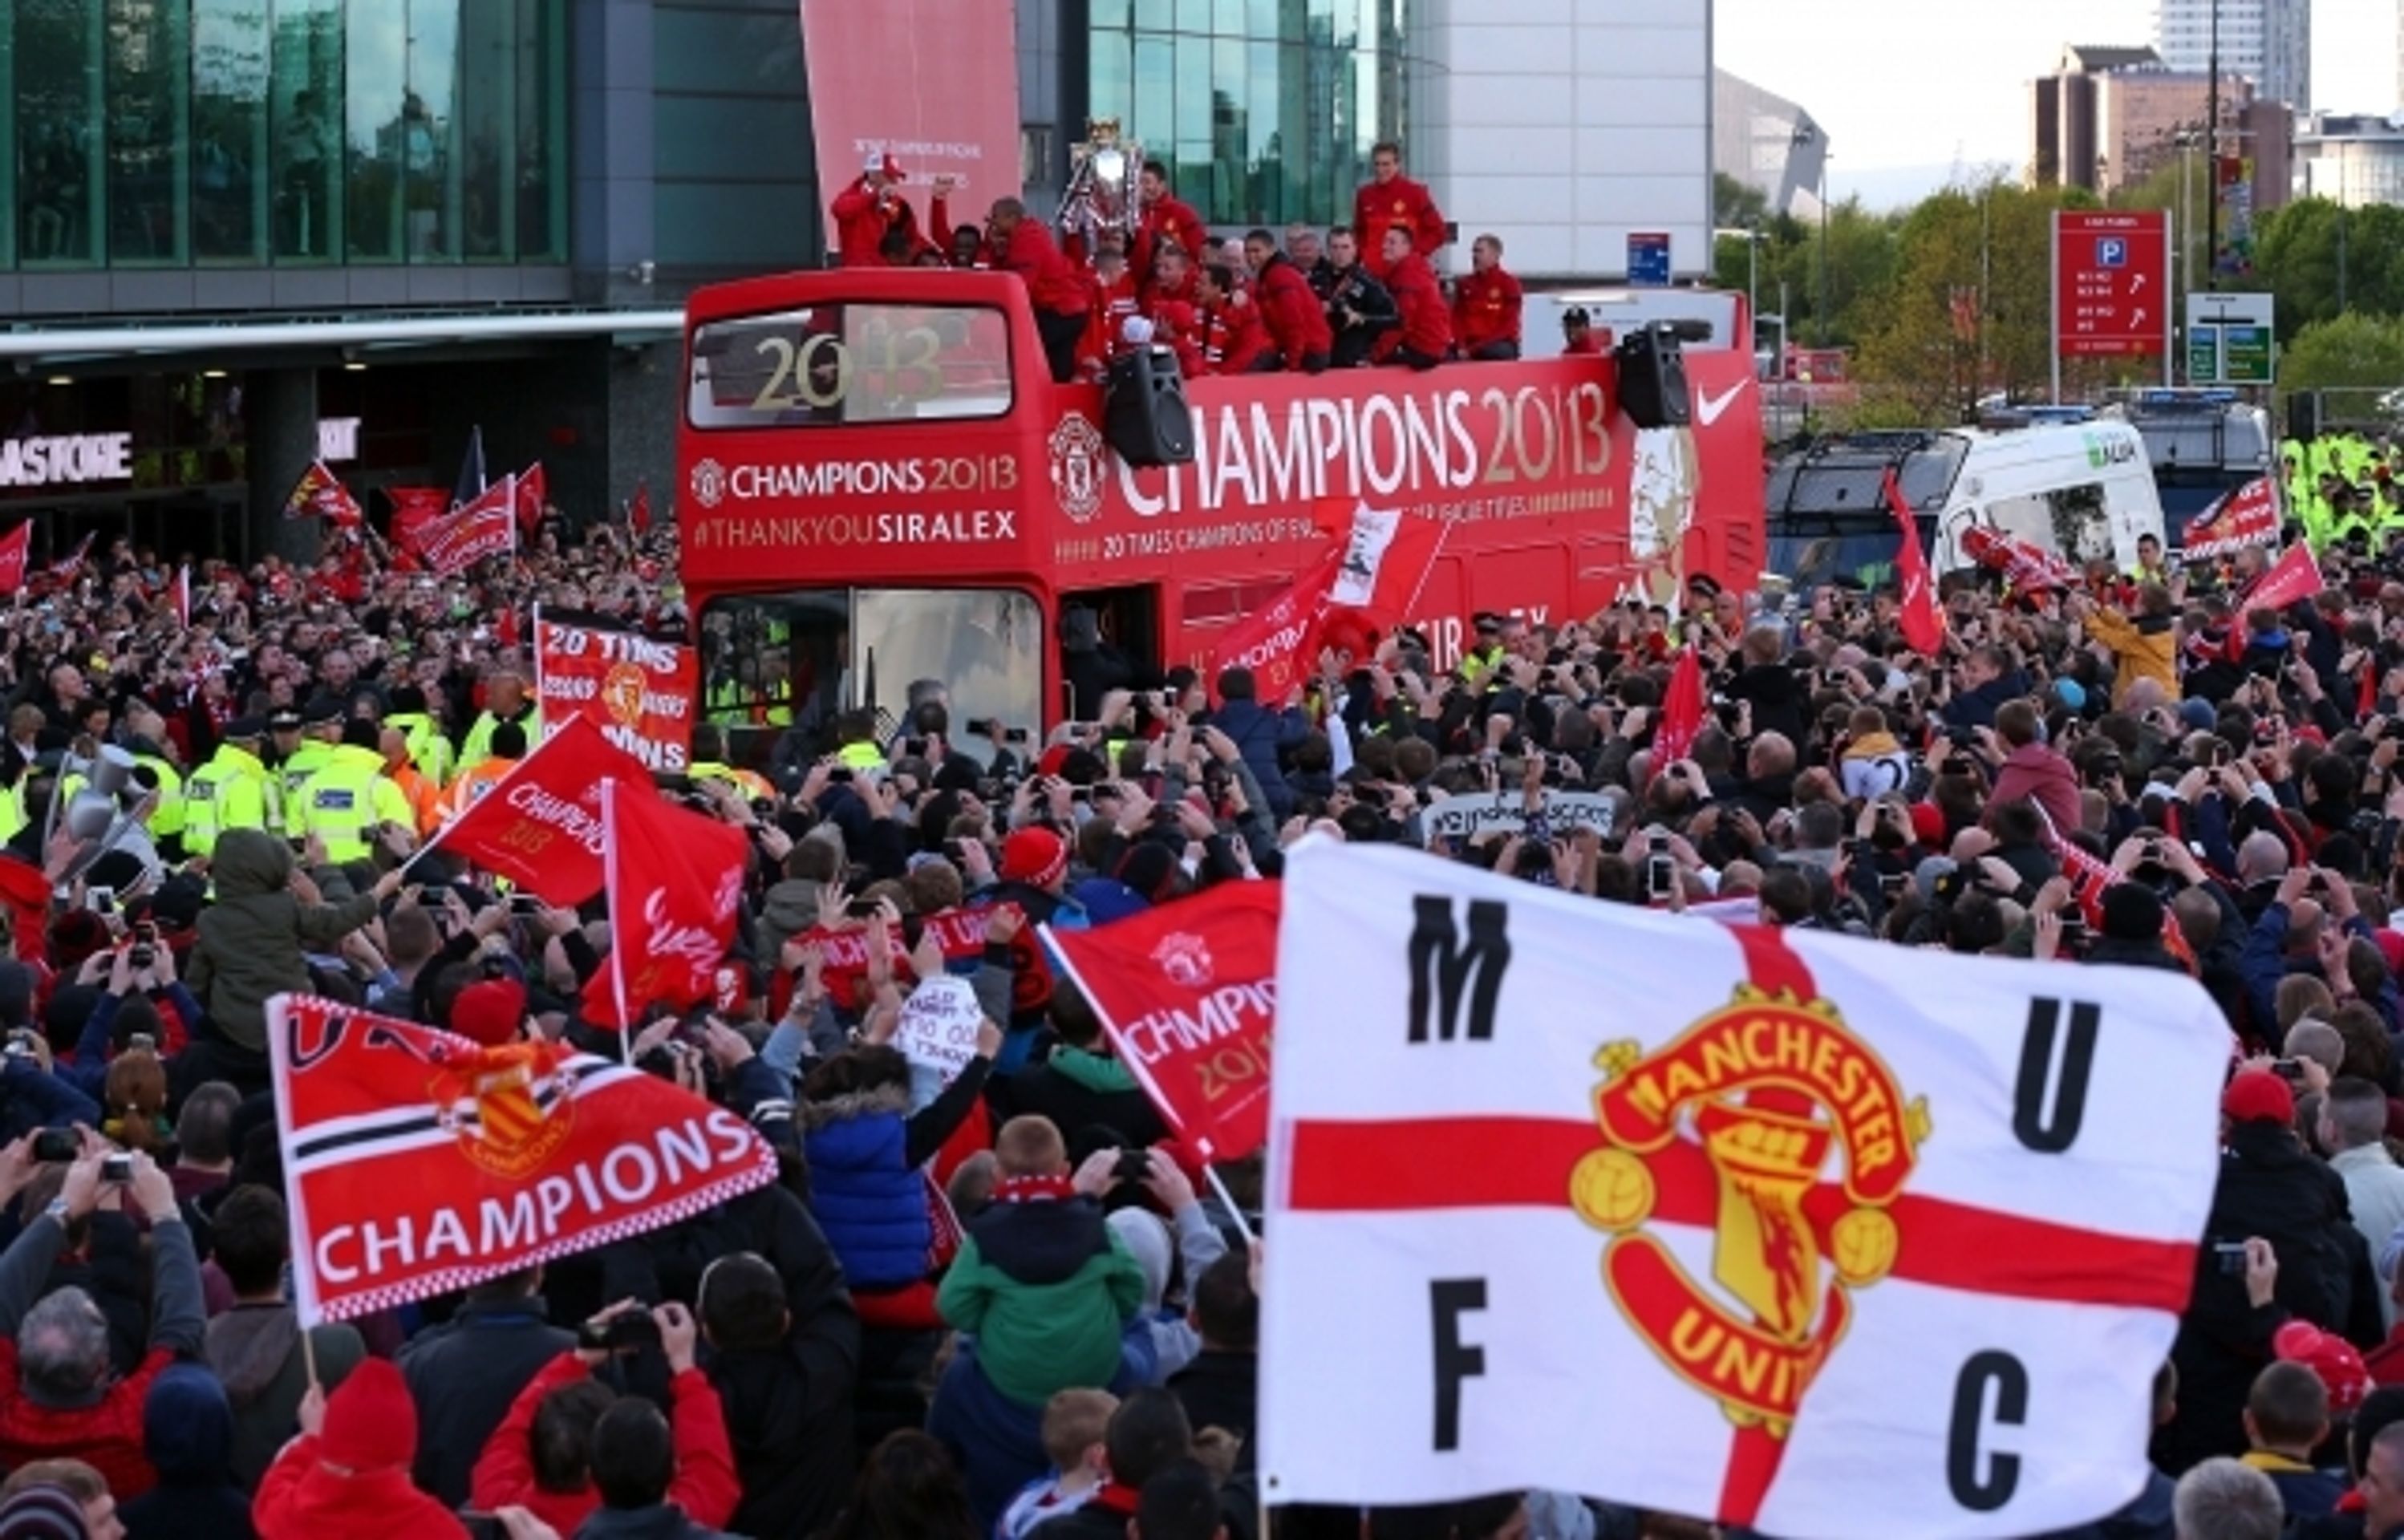 Oslavy v Manchesteru a loučení s Alexem Fergusonem - 17 - Oslavy v Manchesteru a loučení s Alexem Fergusonem (17/22)